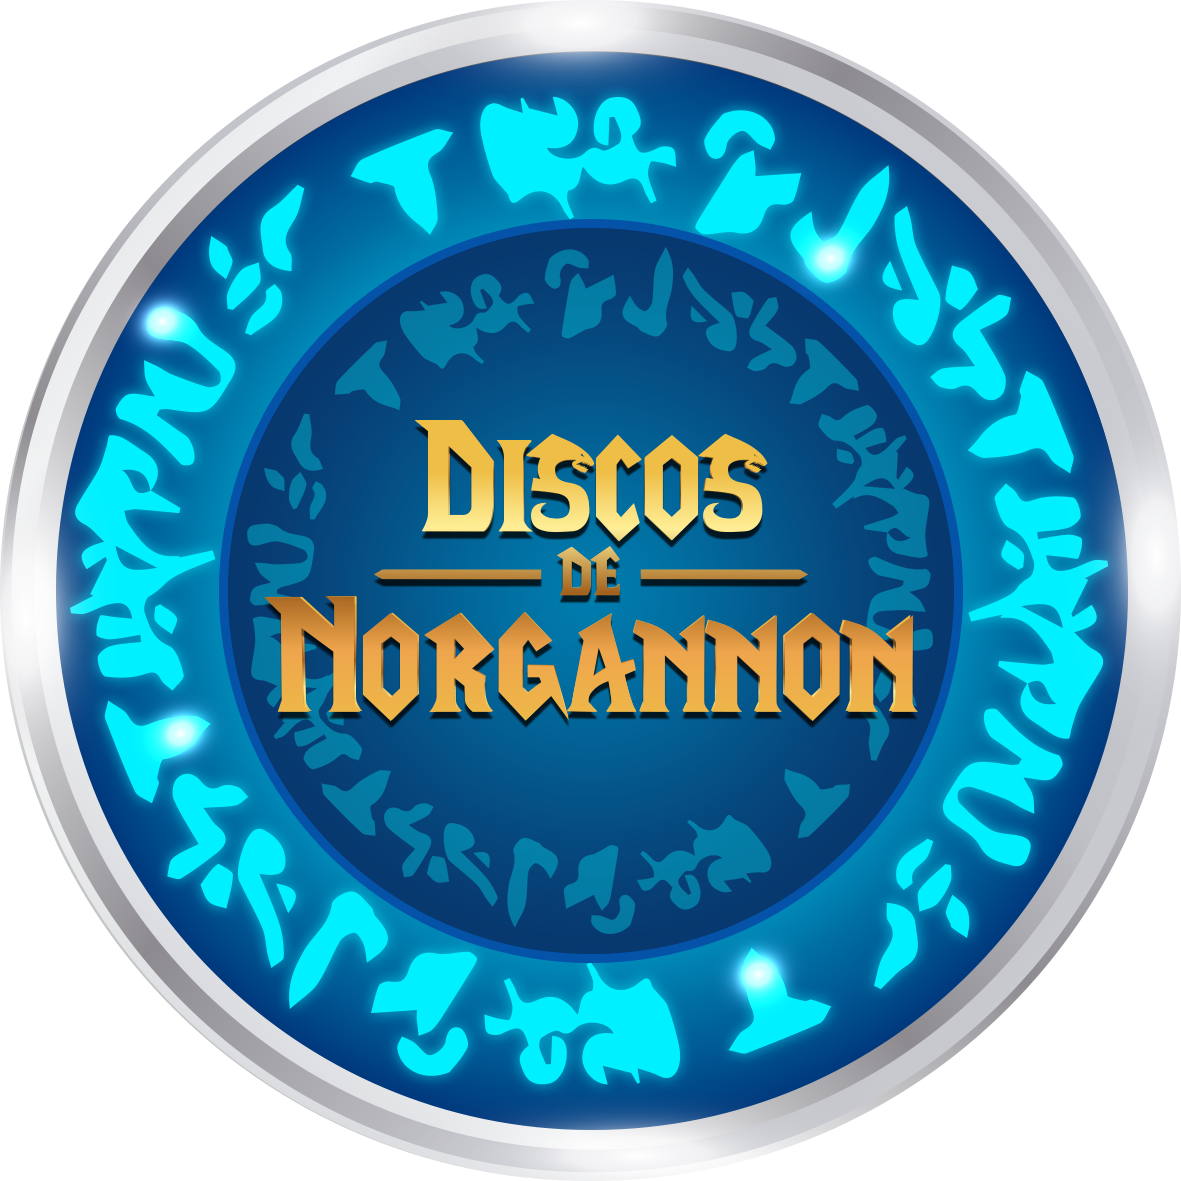 Discos de Norgannon